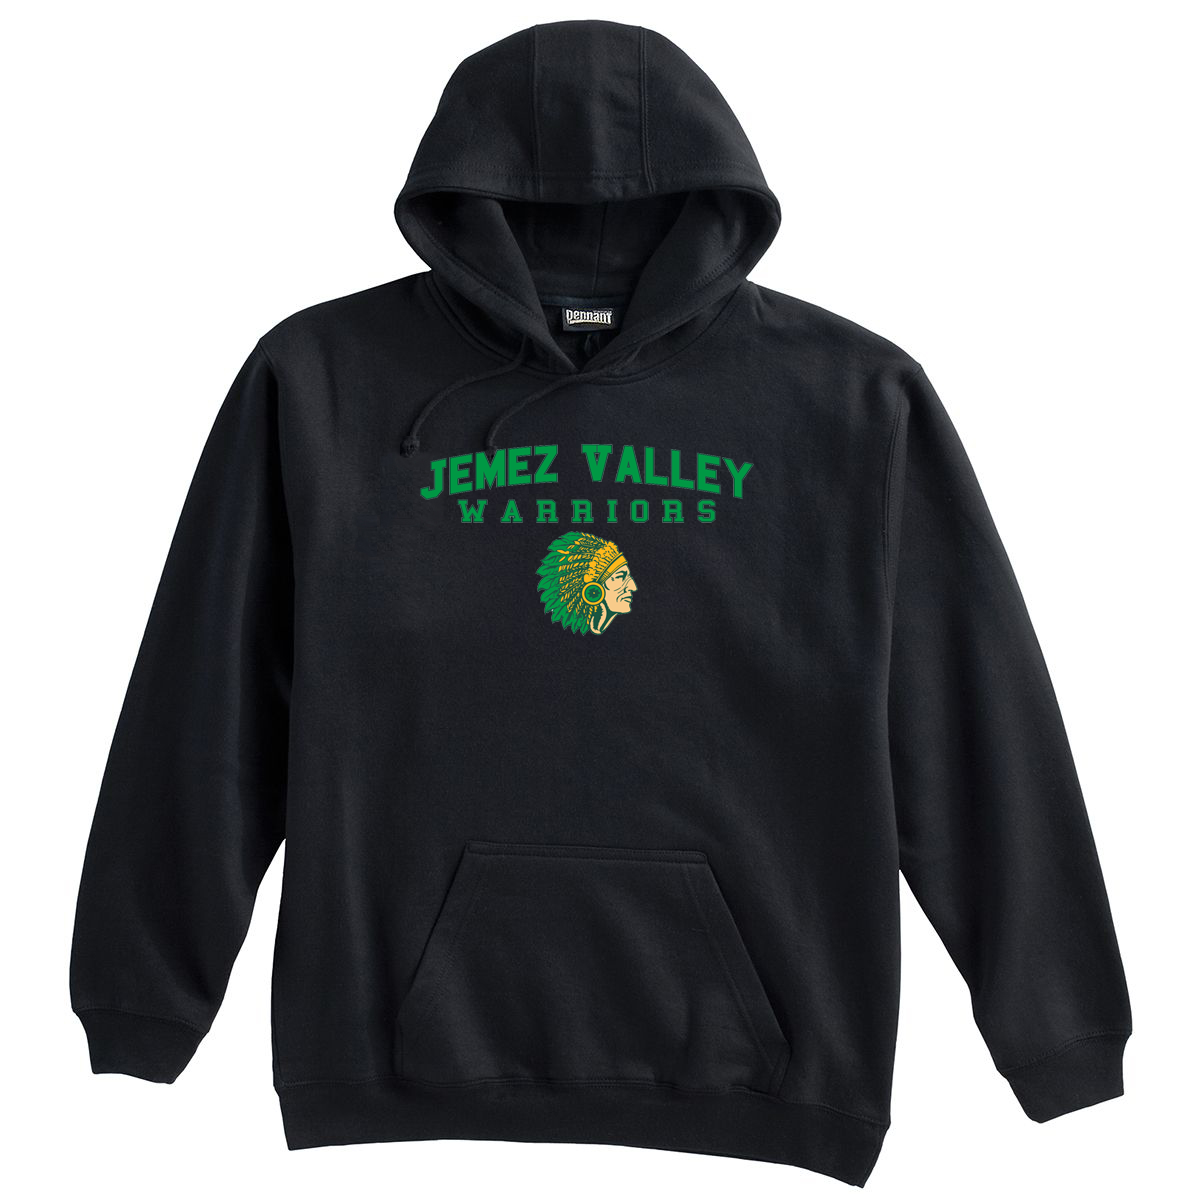 Jemez Valley Warriors Sweatshirt